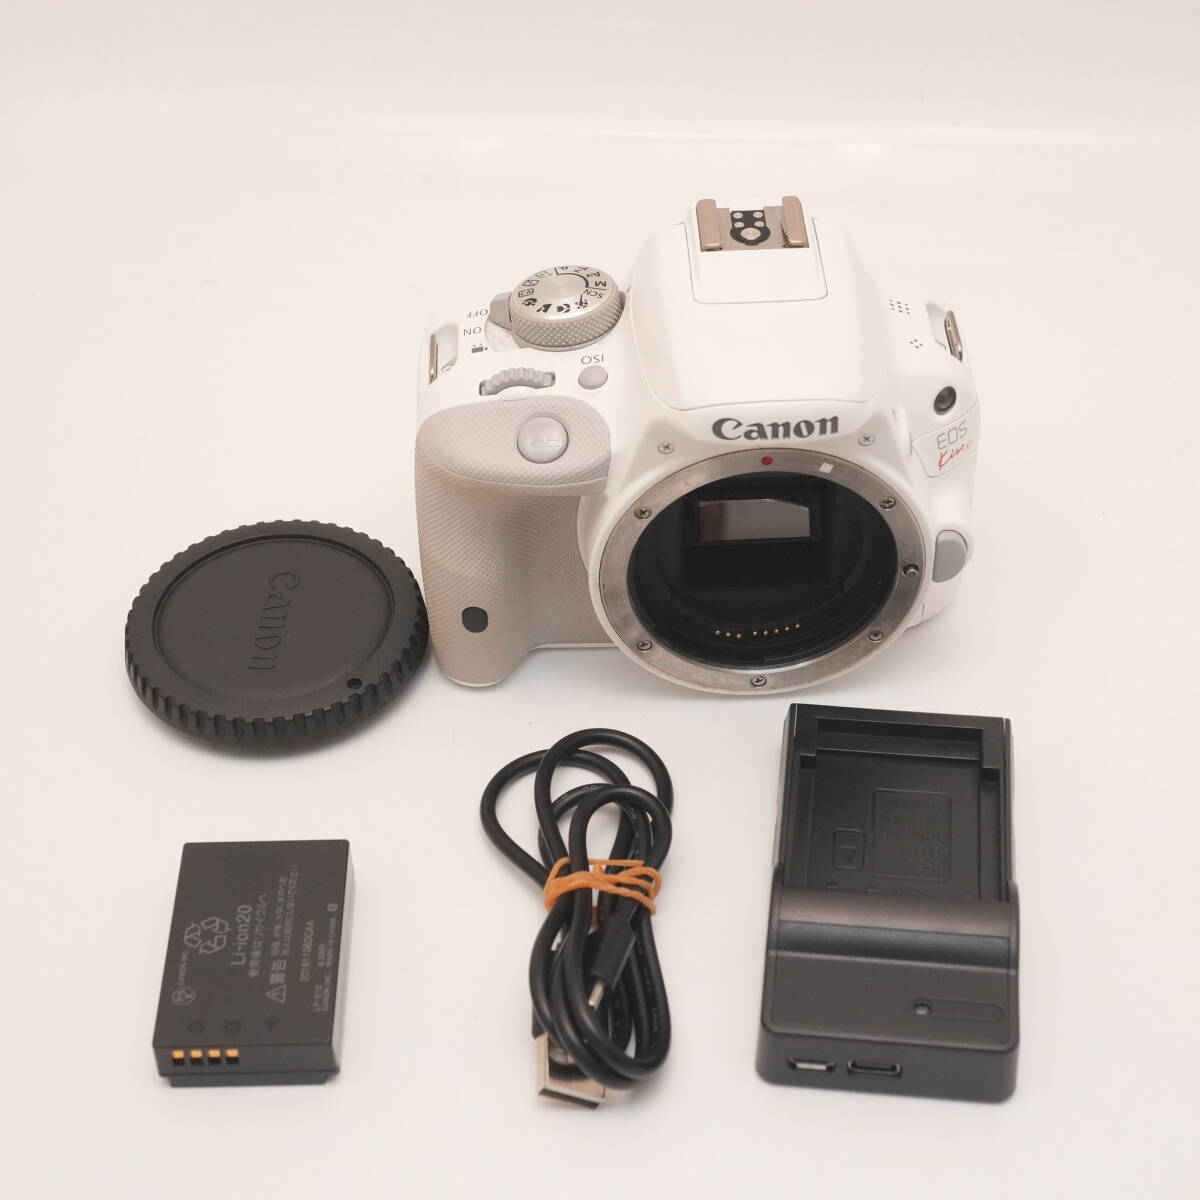 キヤノン Canon デジタル一眼レフカメラ EOS Kiss X7 ボディ ホワイトの画像1